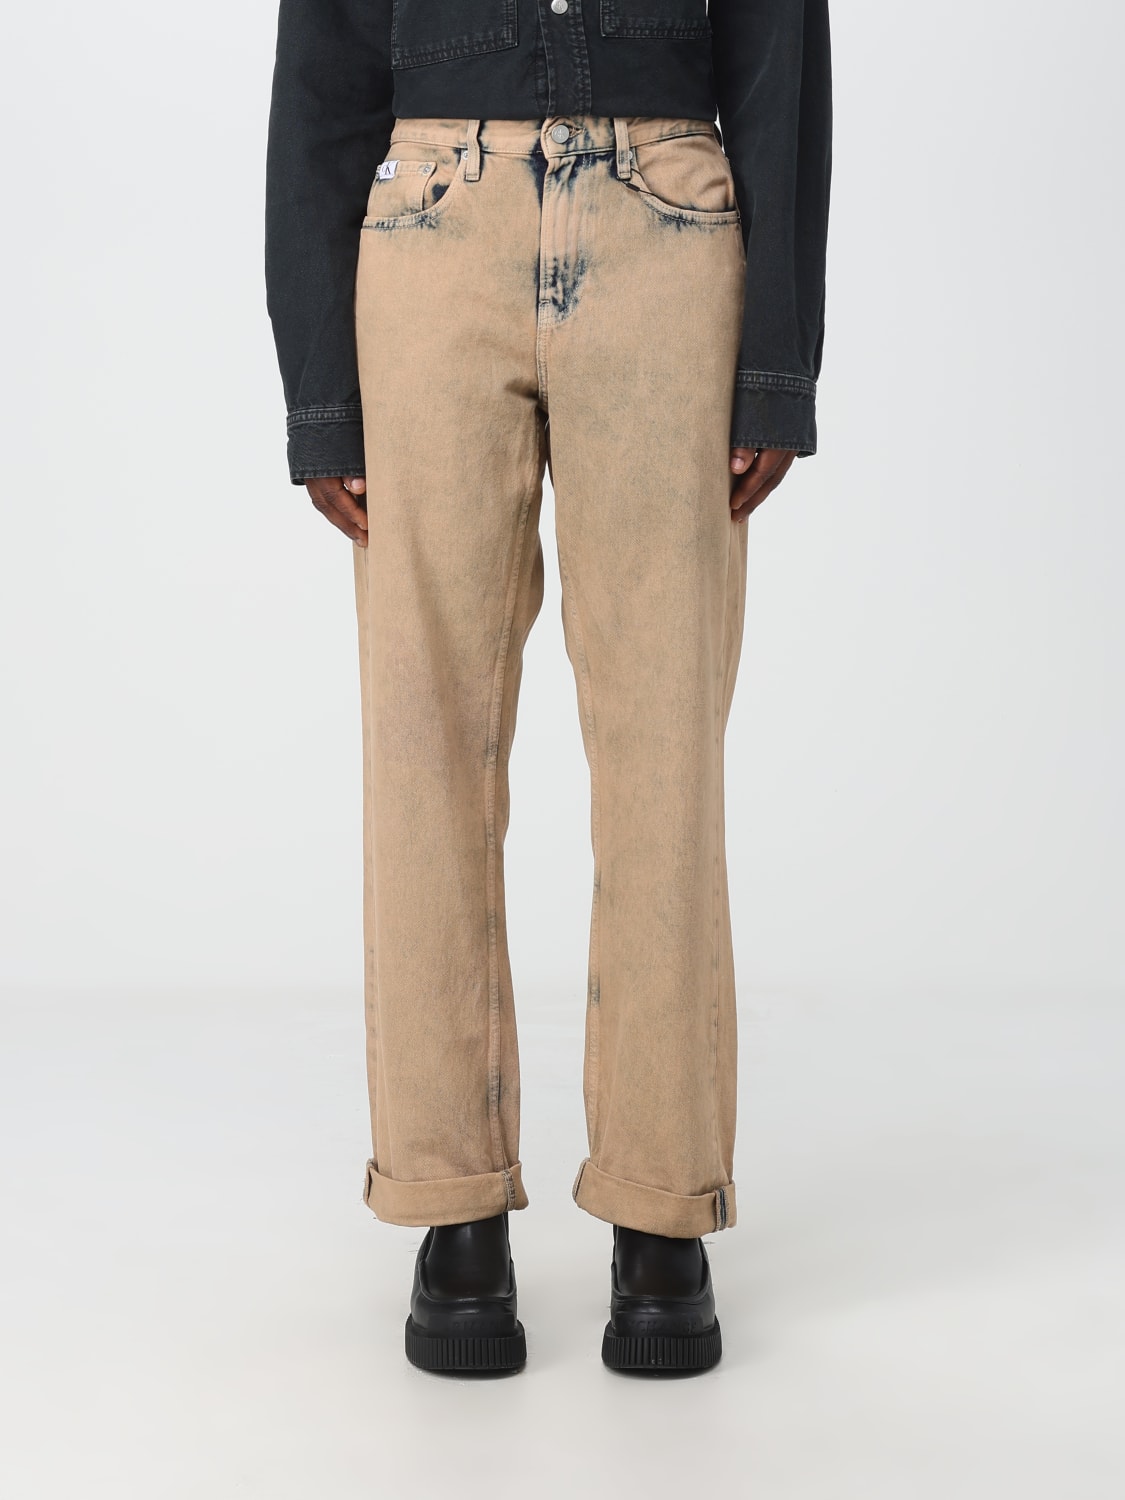 CALVIN KLEIN JEANS: Damen Jeans - Beige | Calvin Klein Jeans Jeans  J30J324235 online auf